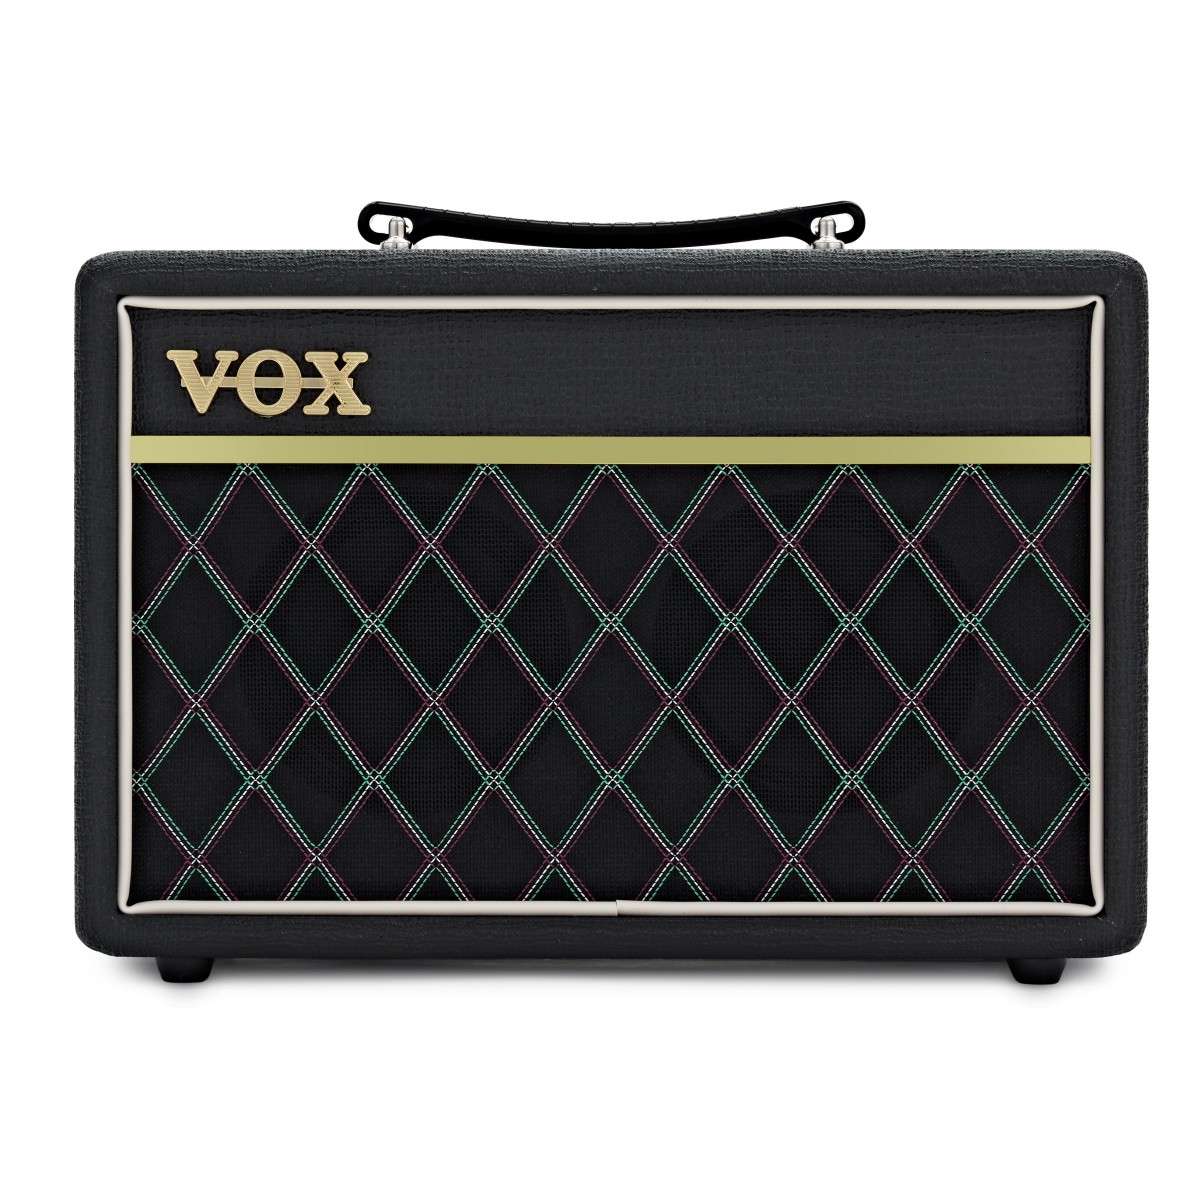 Vox Pathfinder 10 Bass Combo - New Vox  Combo Amplifier Bass Guitar Amplifier